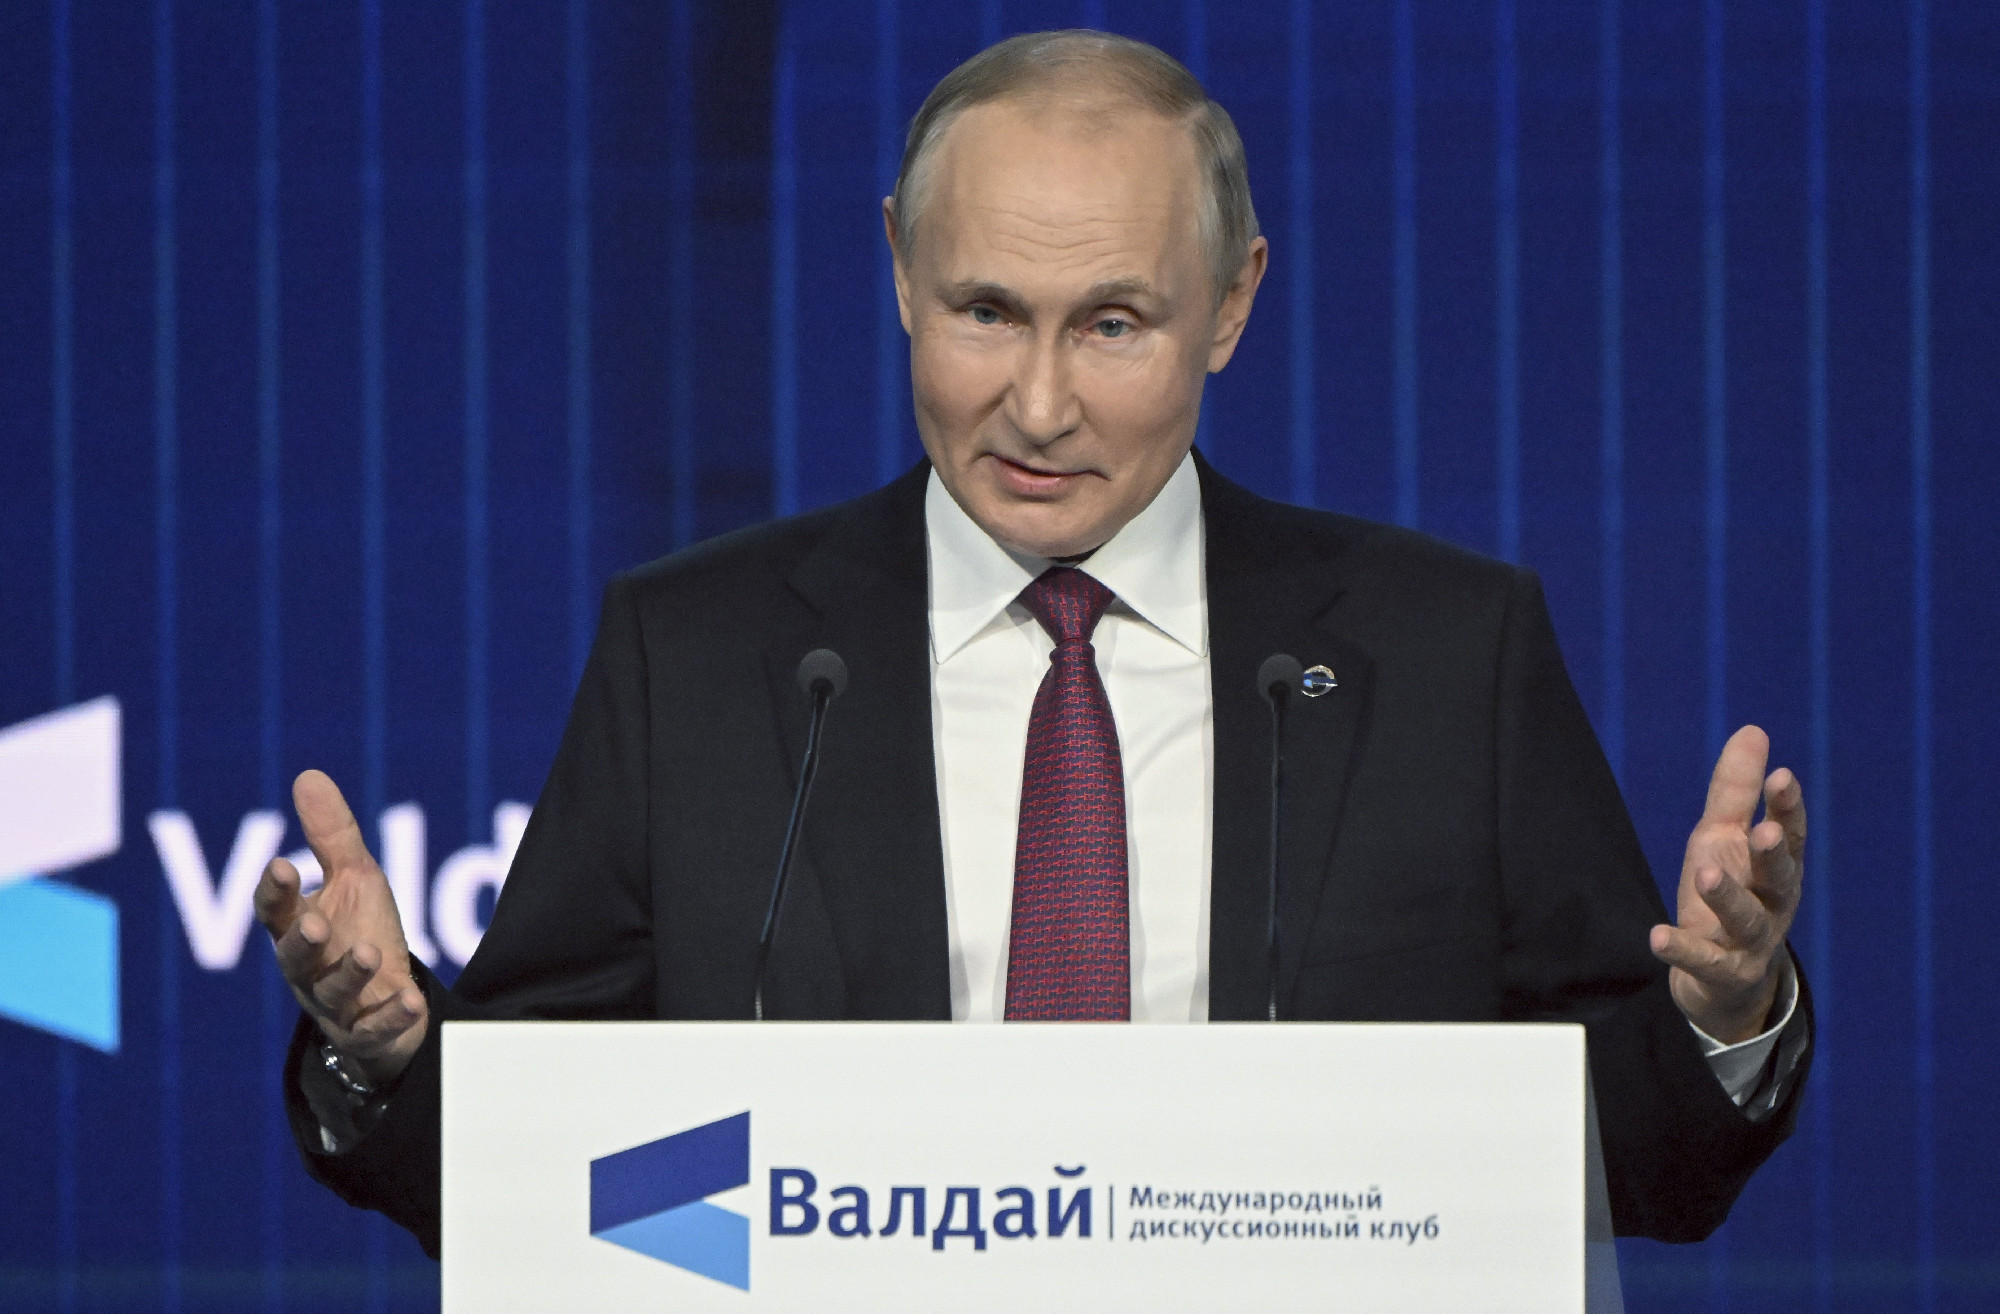 Putyin szerint nincs értelme hadsereggel elnyomni egy népet